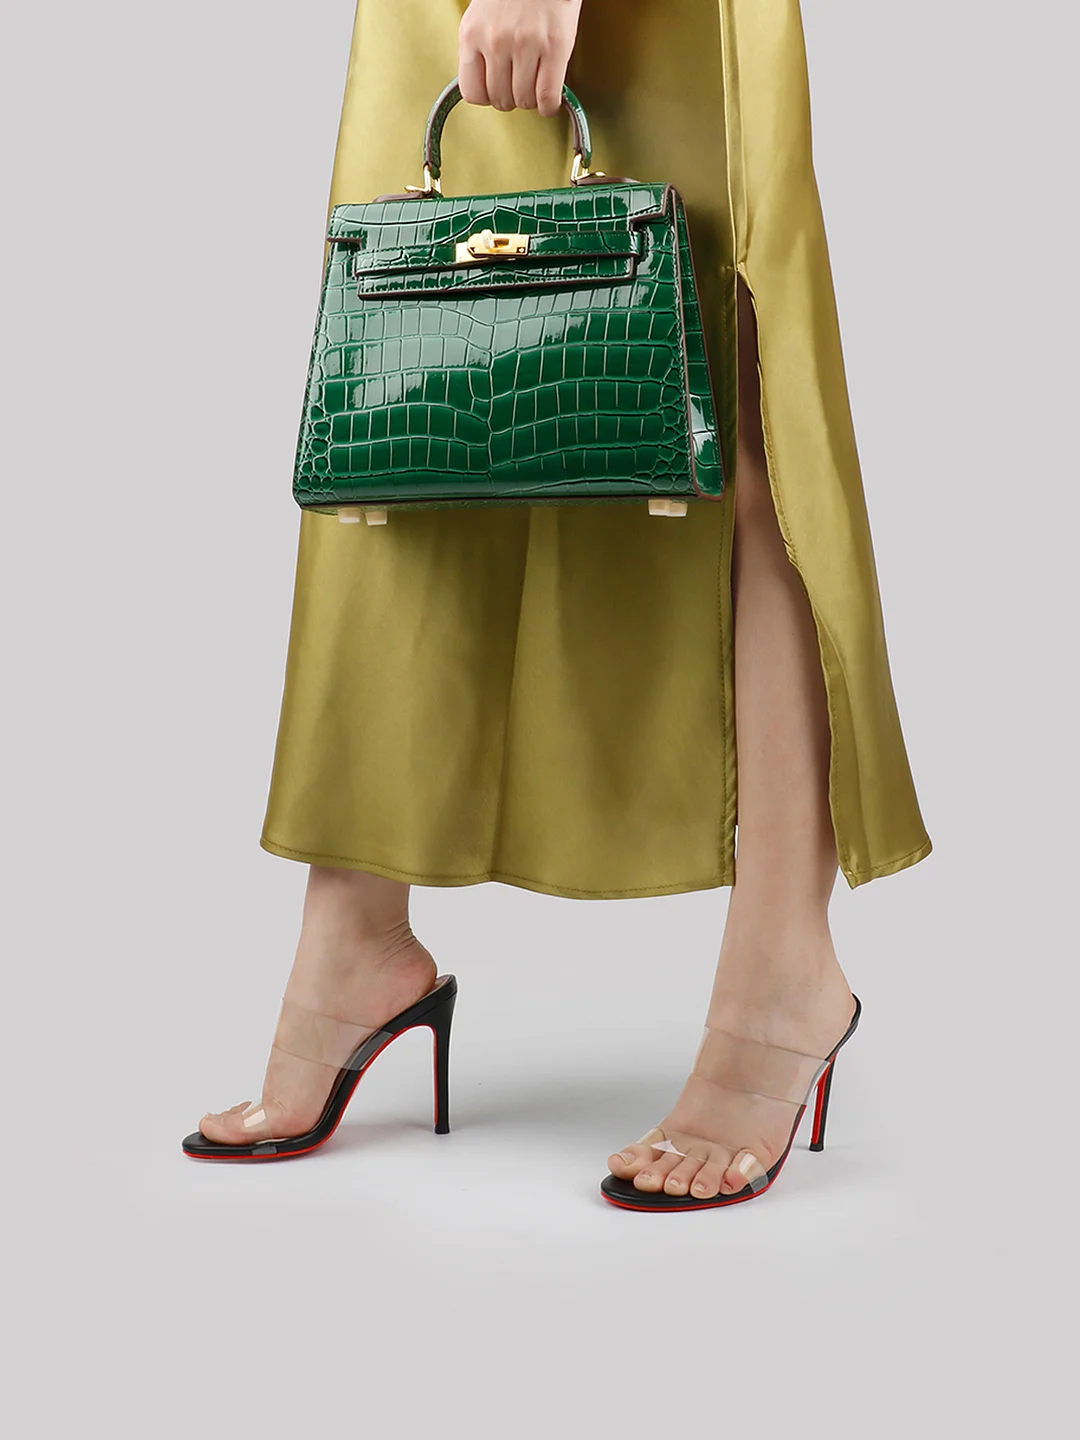 Women's Fashion Leather Lock Bag All-Match Handbag Shoulder Messenger Bag Kelly